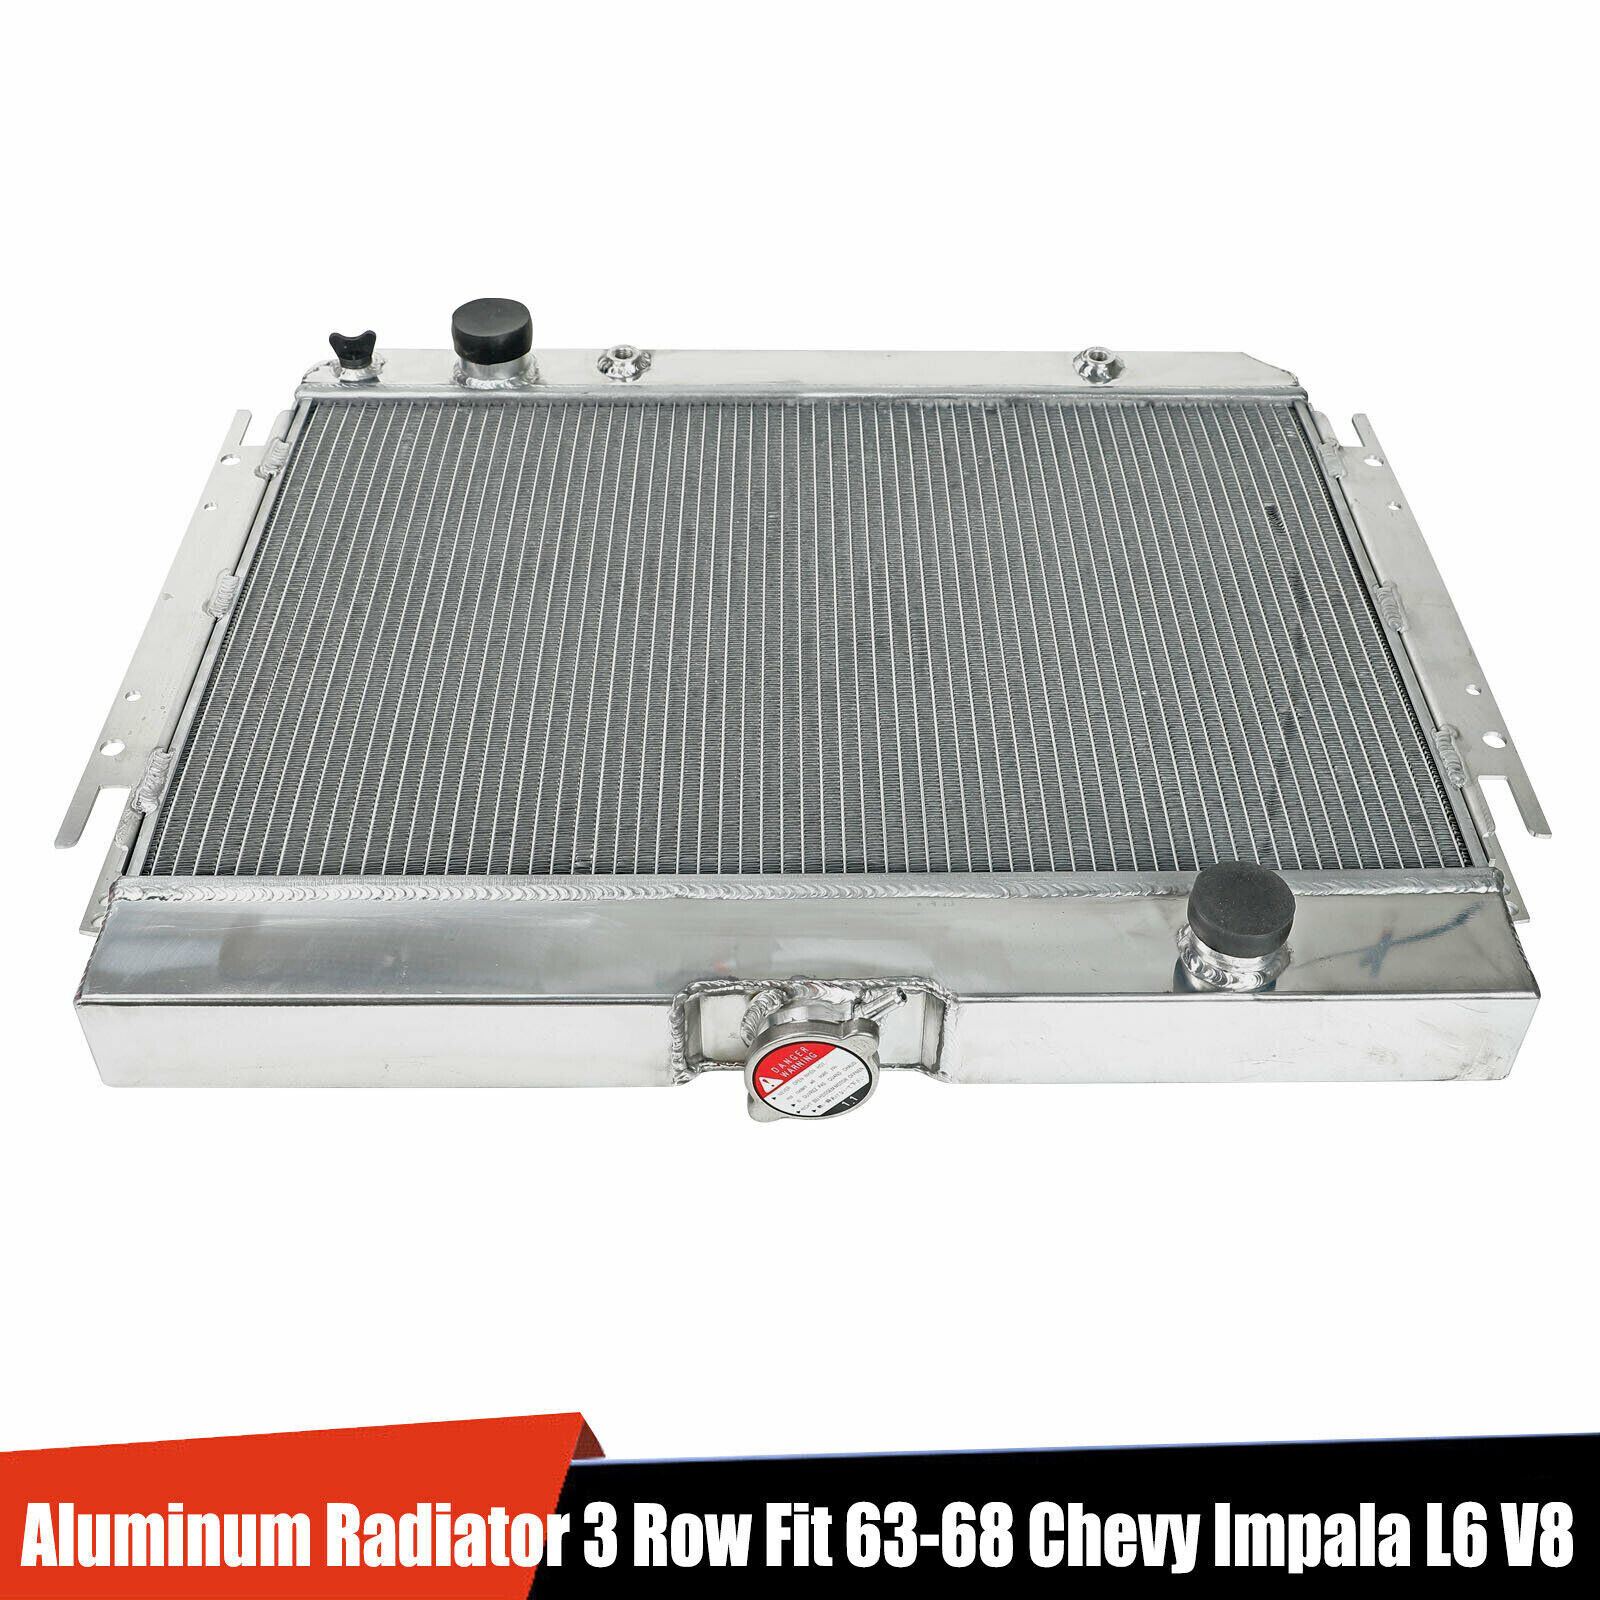 Racing 3 Row Aluminum Radiator For 1963-68 Chevy Impala L6 V8 /1964-67 EI Camino